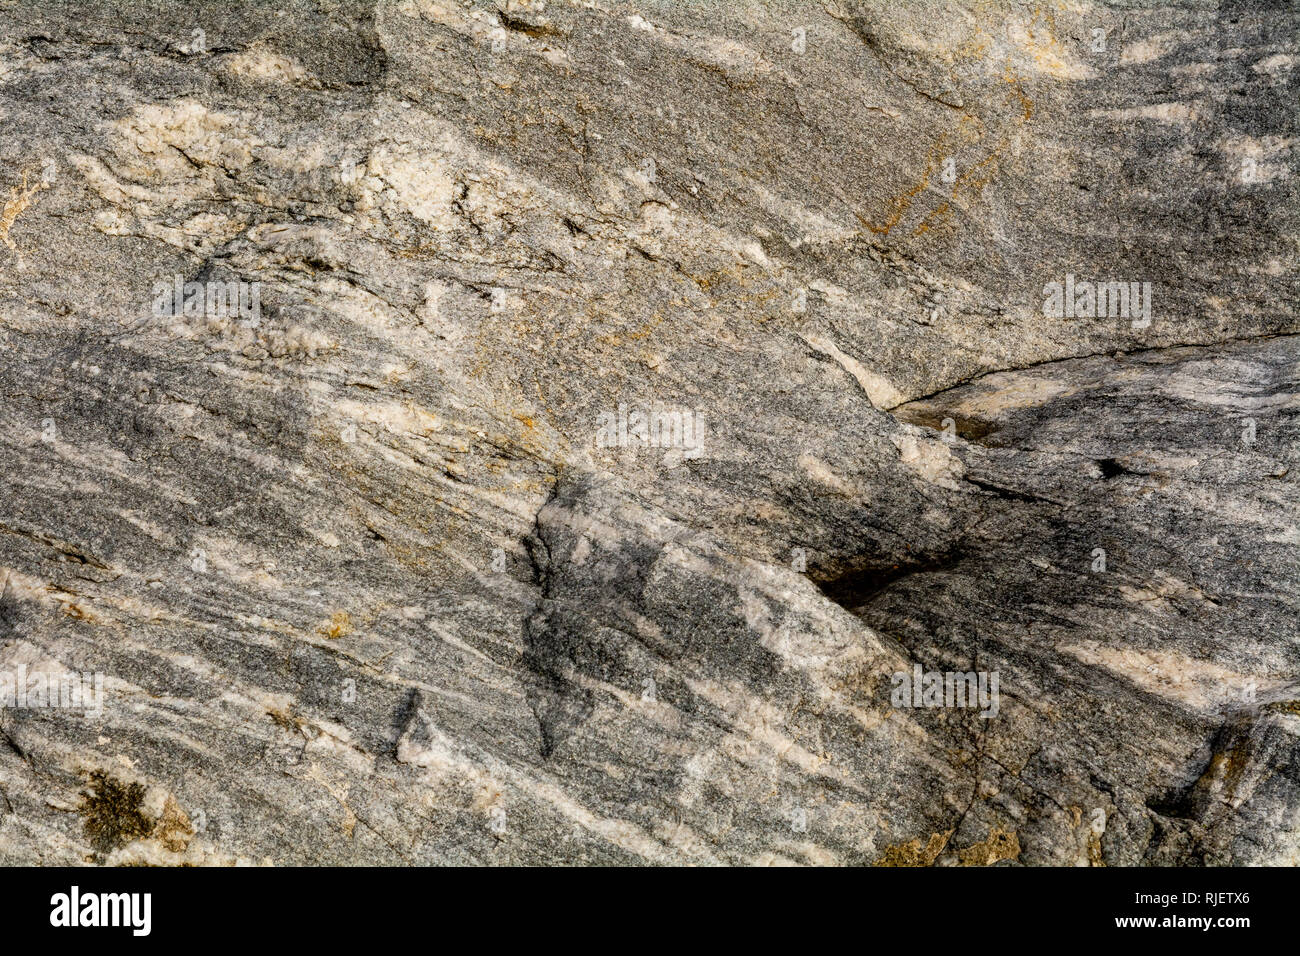 Granodiorit ist ein phaneritic - Strukturierte intrusiveigneous Rock vergleichbar mit Granit - Geologie Textur oder Hintergrund Stockfoto